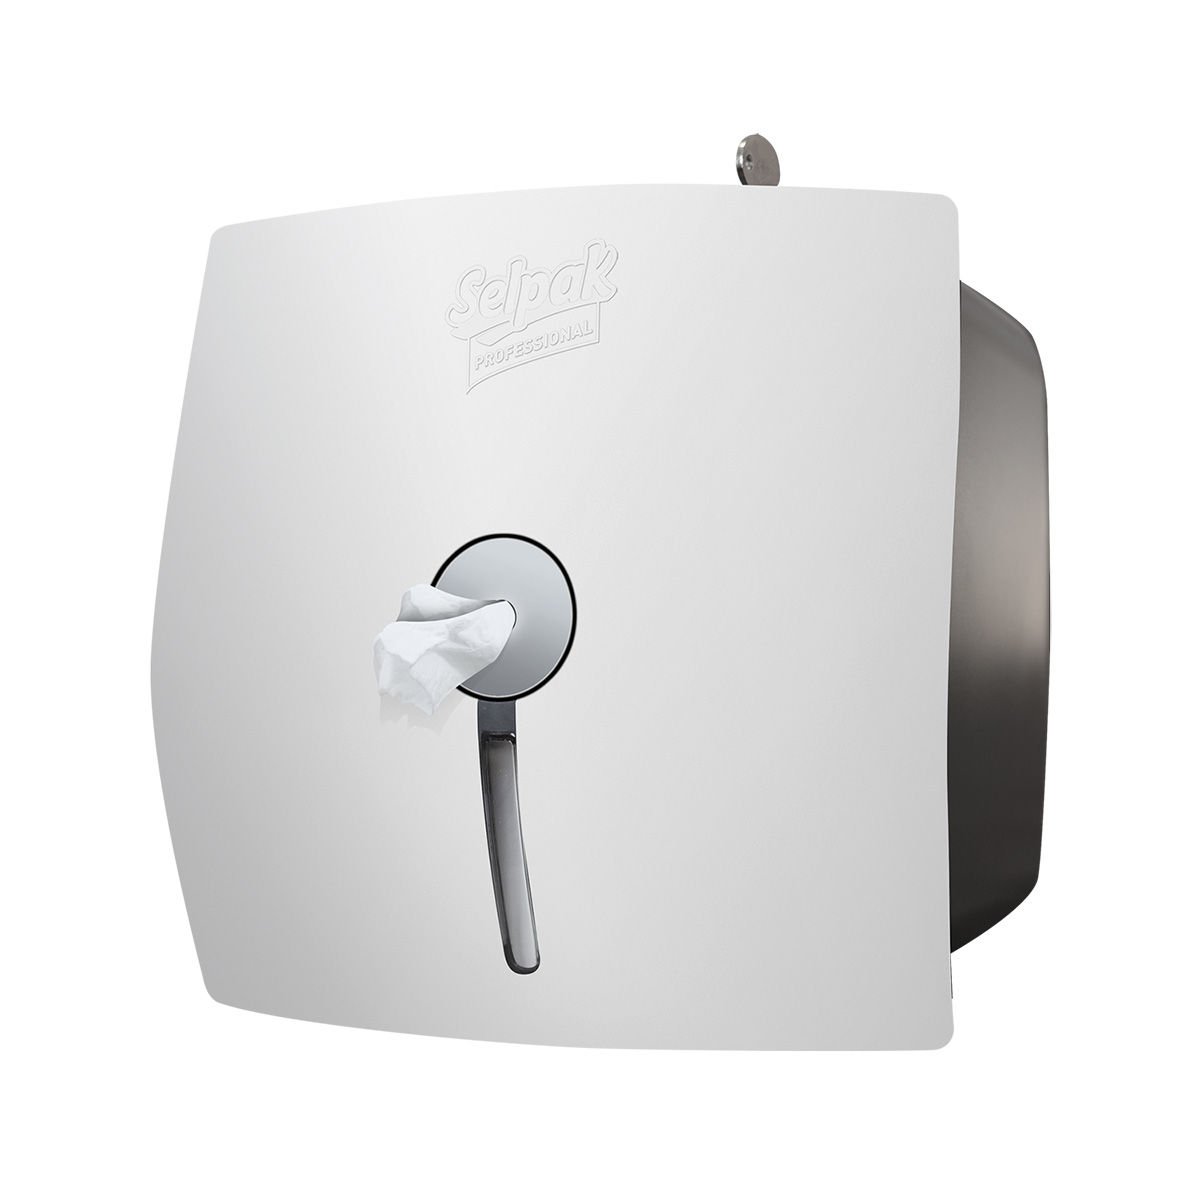 Selpak Professional İçten Çekmeli Tuvalet Kağıdı Dispenseri - Beyaz